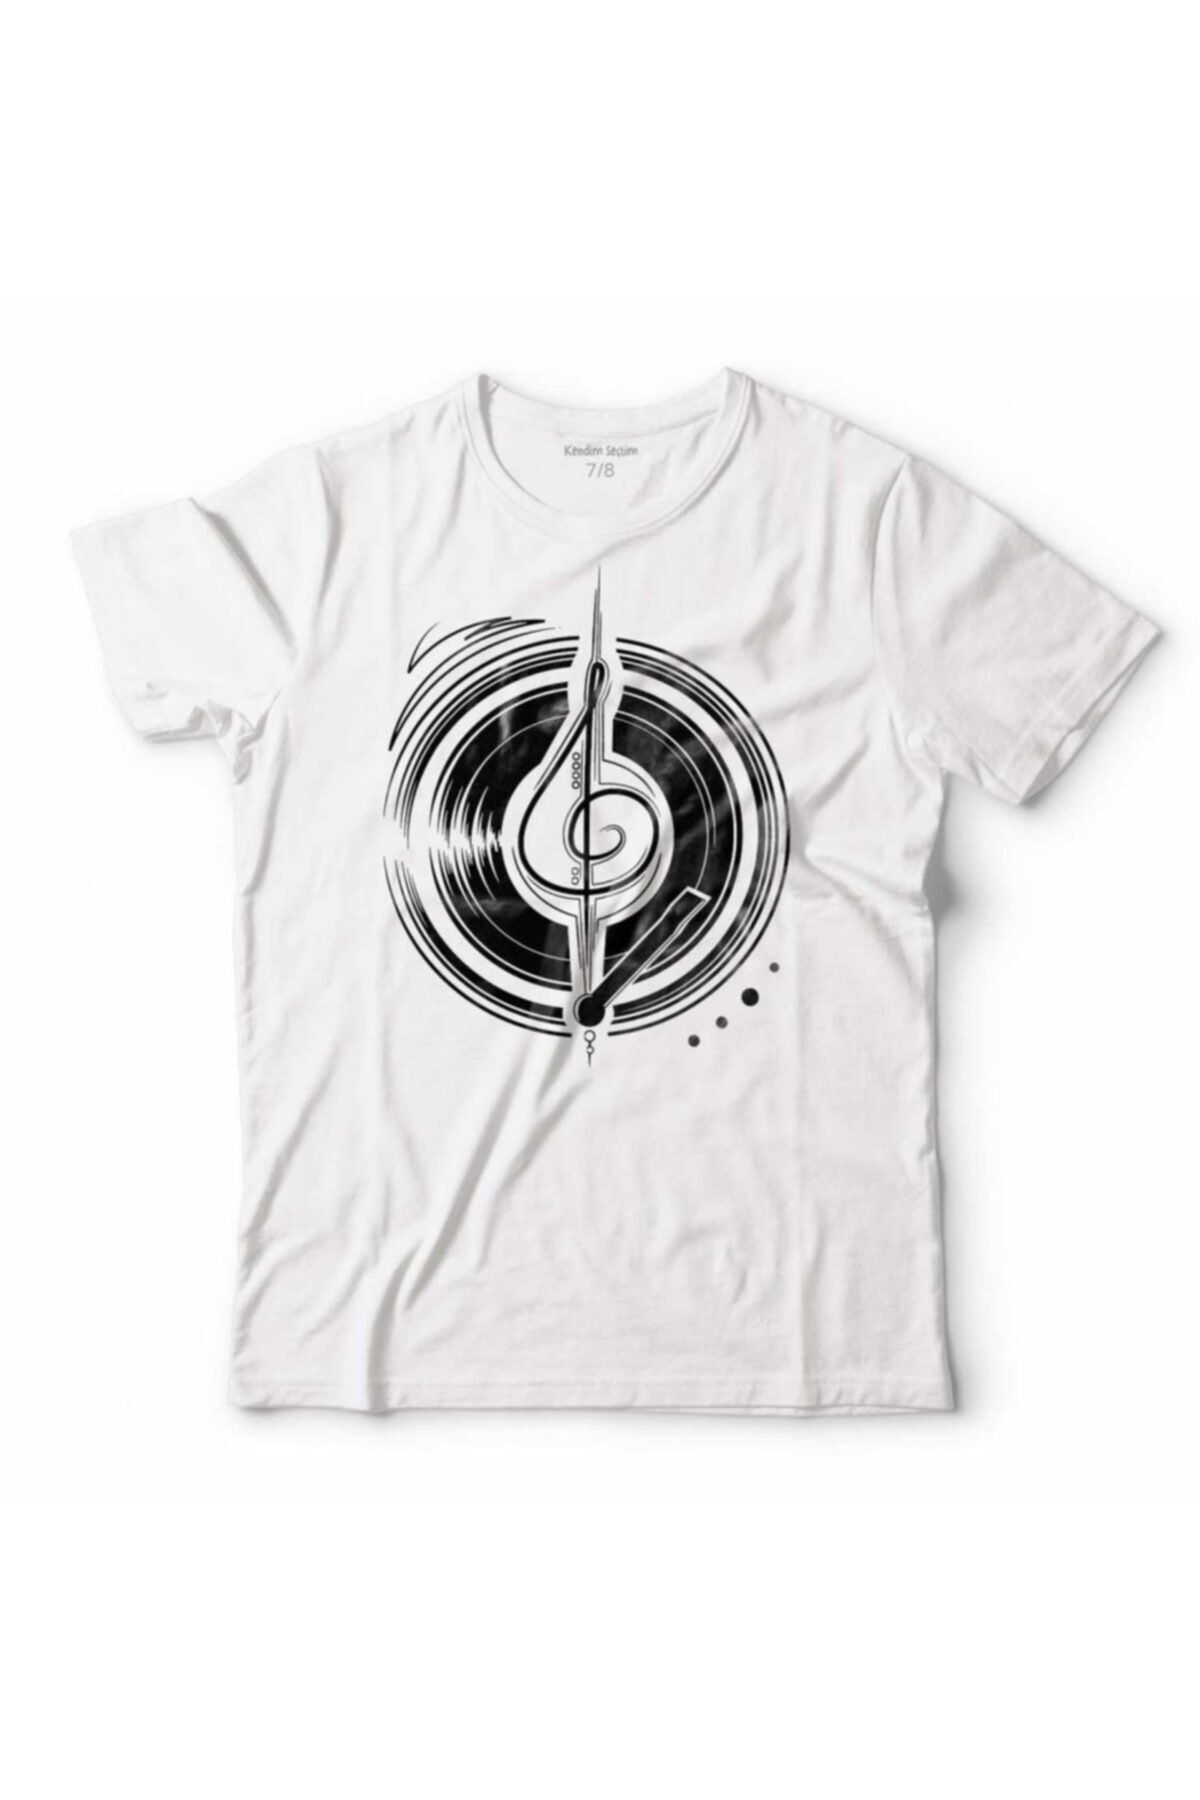 Kendim Seçtim Müzik Cs Disk Dısc Sol Anahtarı Musıc Logo Çocuk Tişört